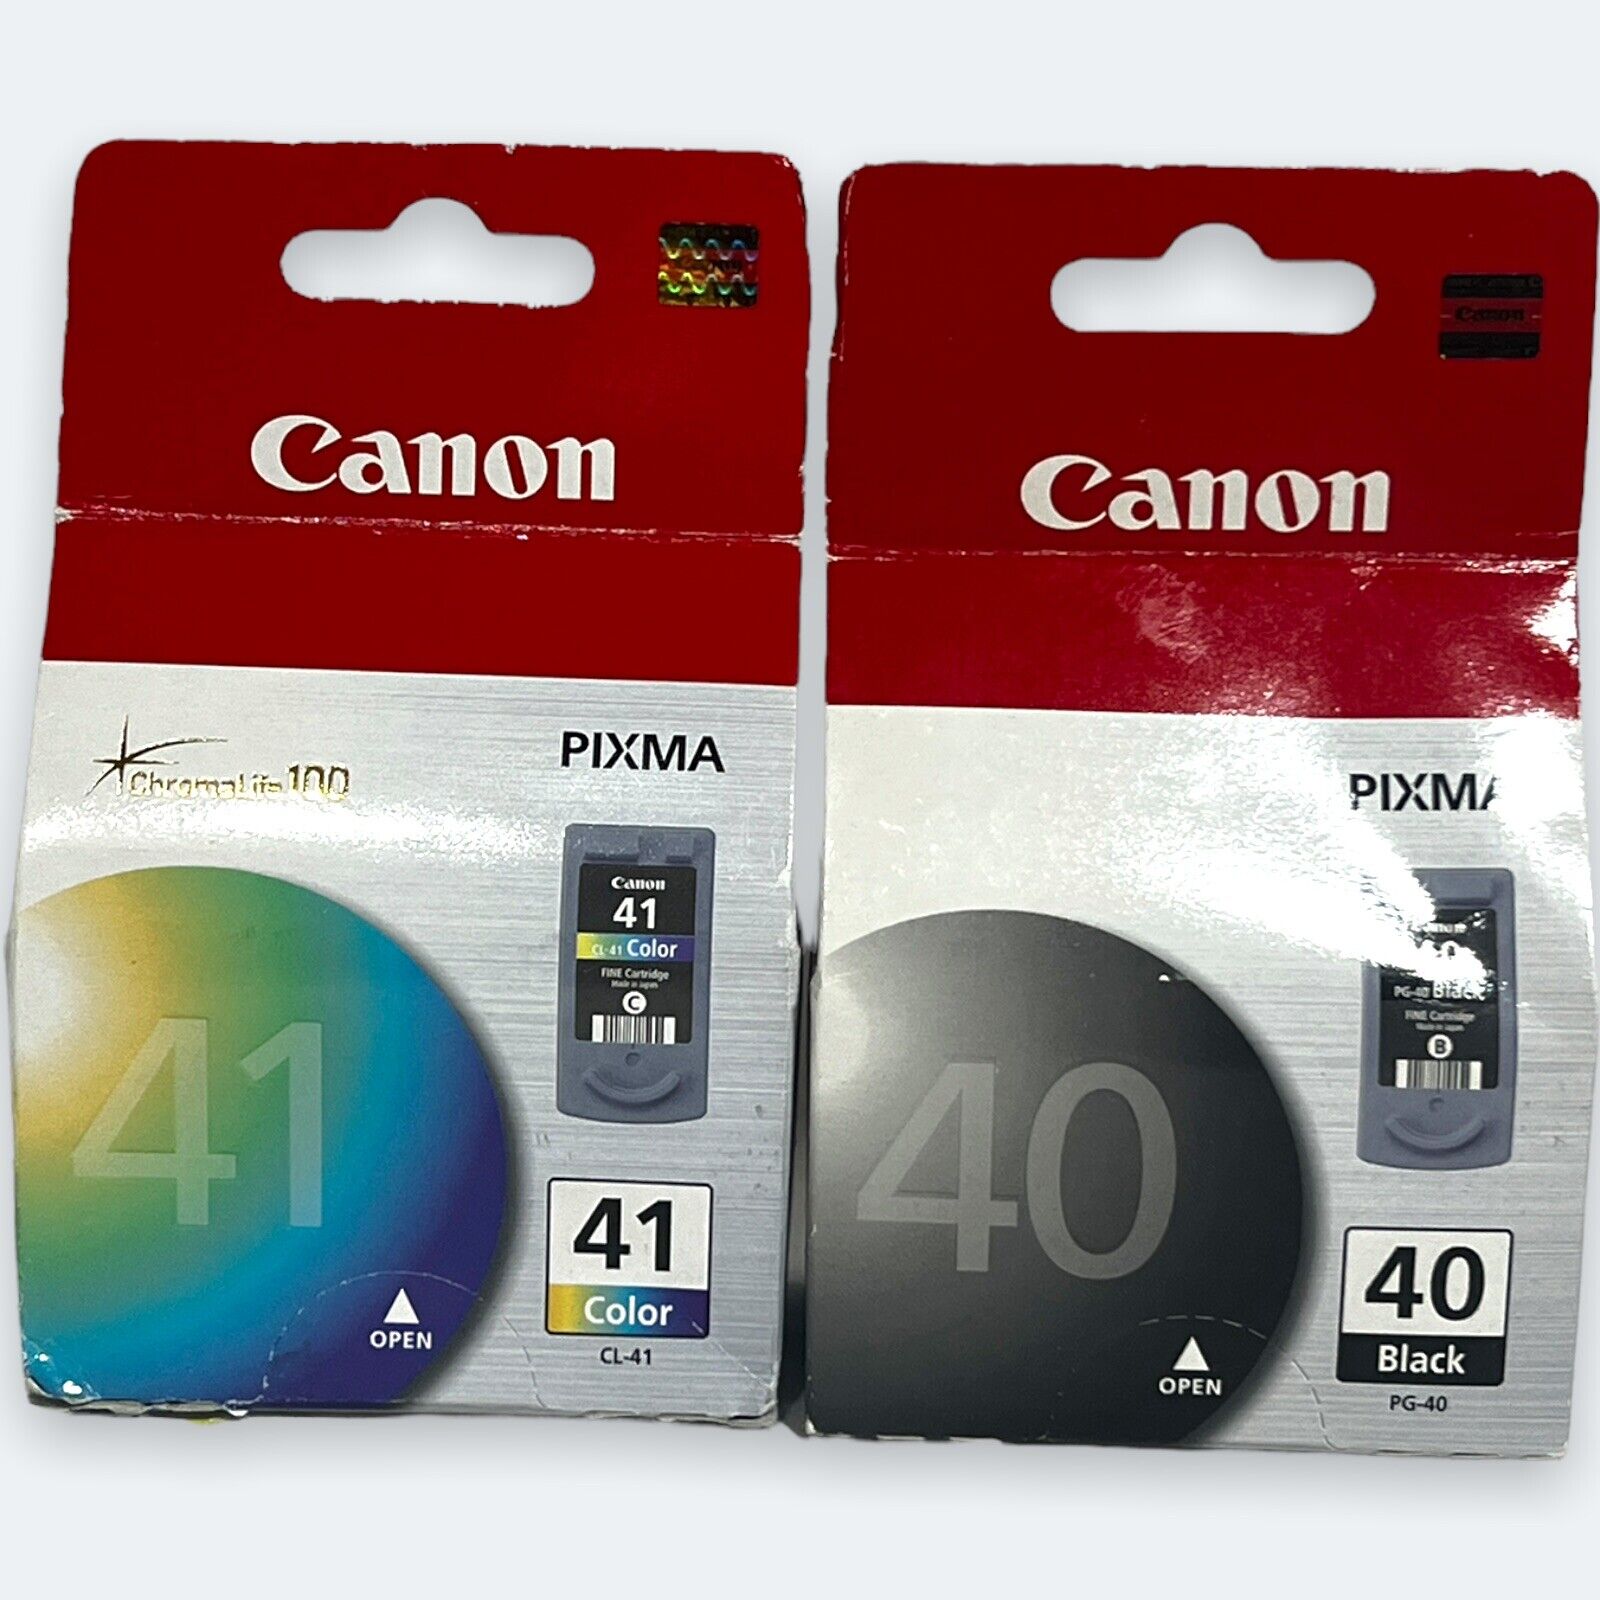 PG-40. Canon pixma 40